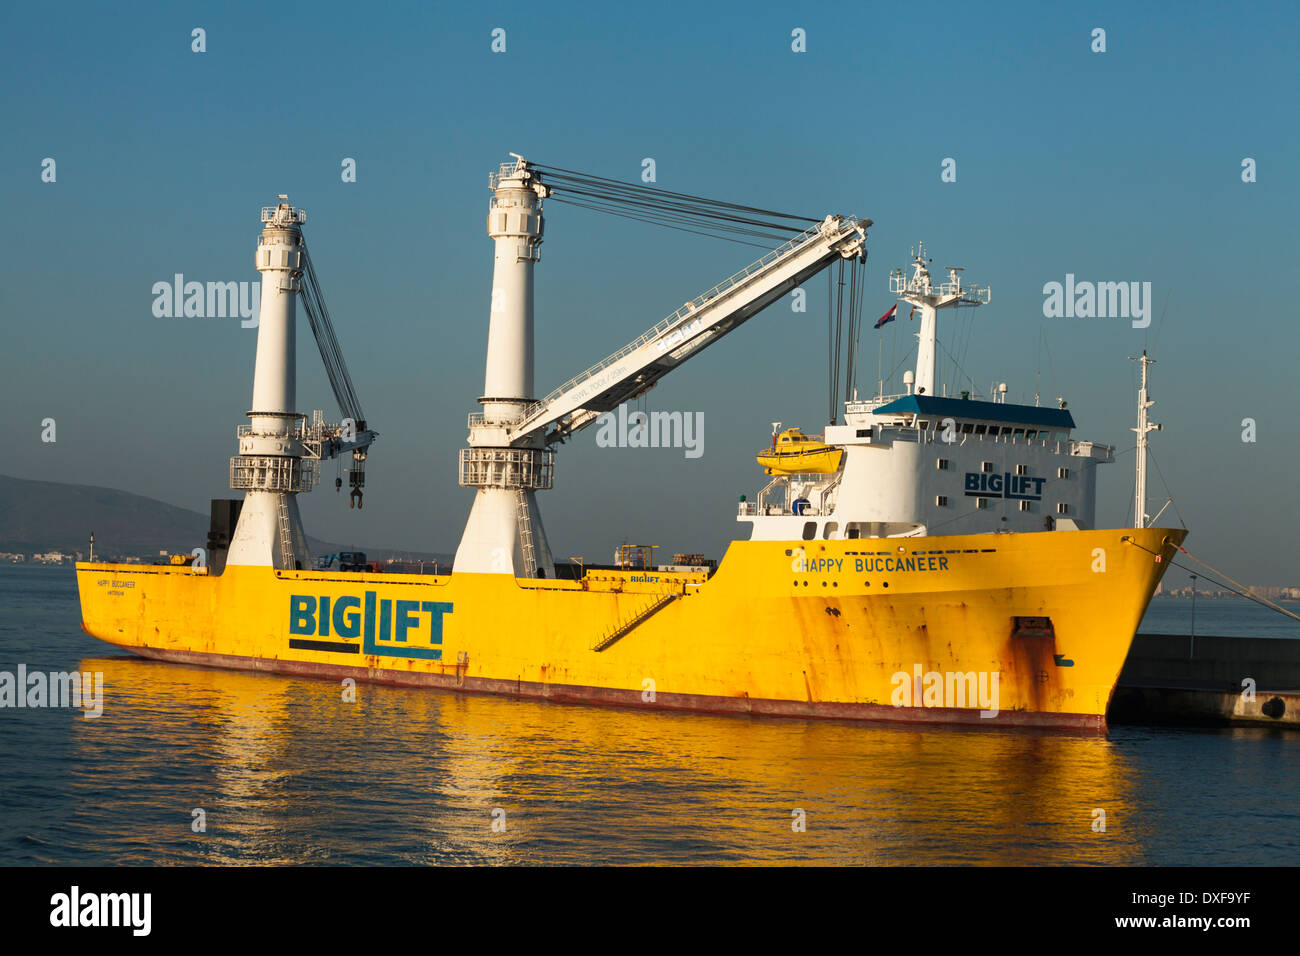 Der Hafen von Algeciras in Andalusien, Spanien. Stockfoto